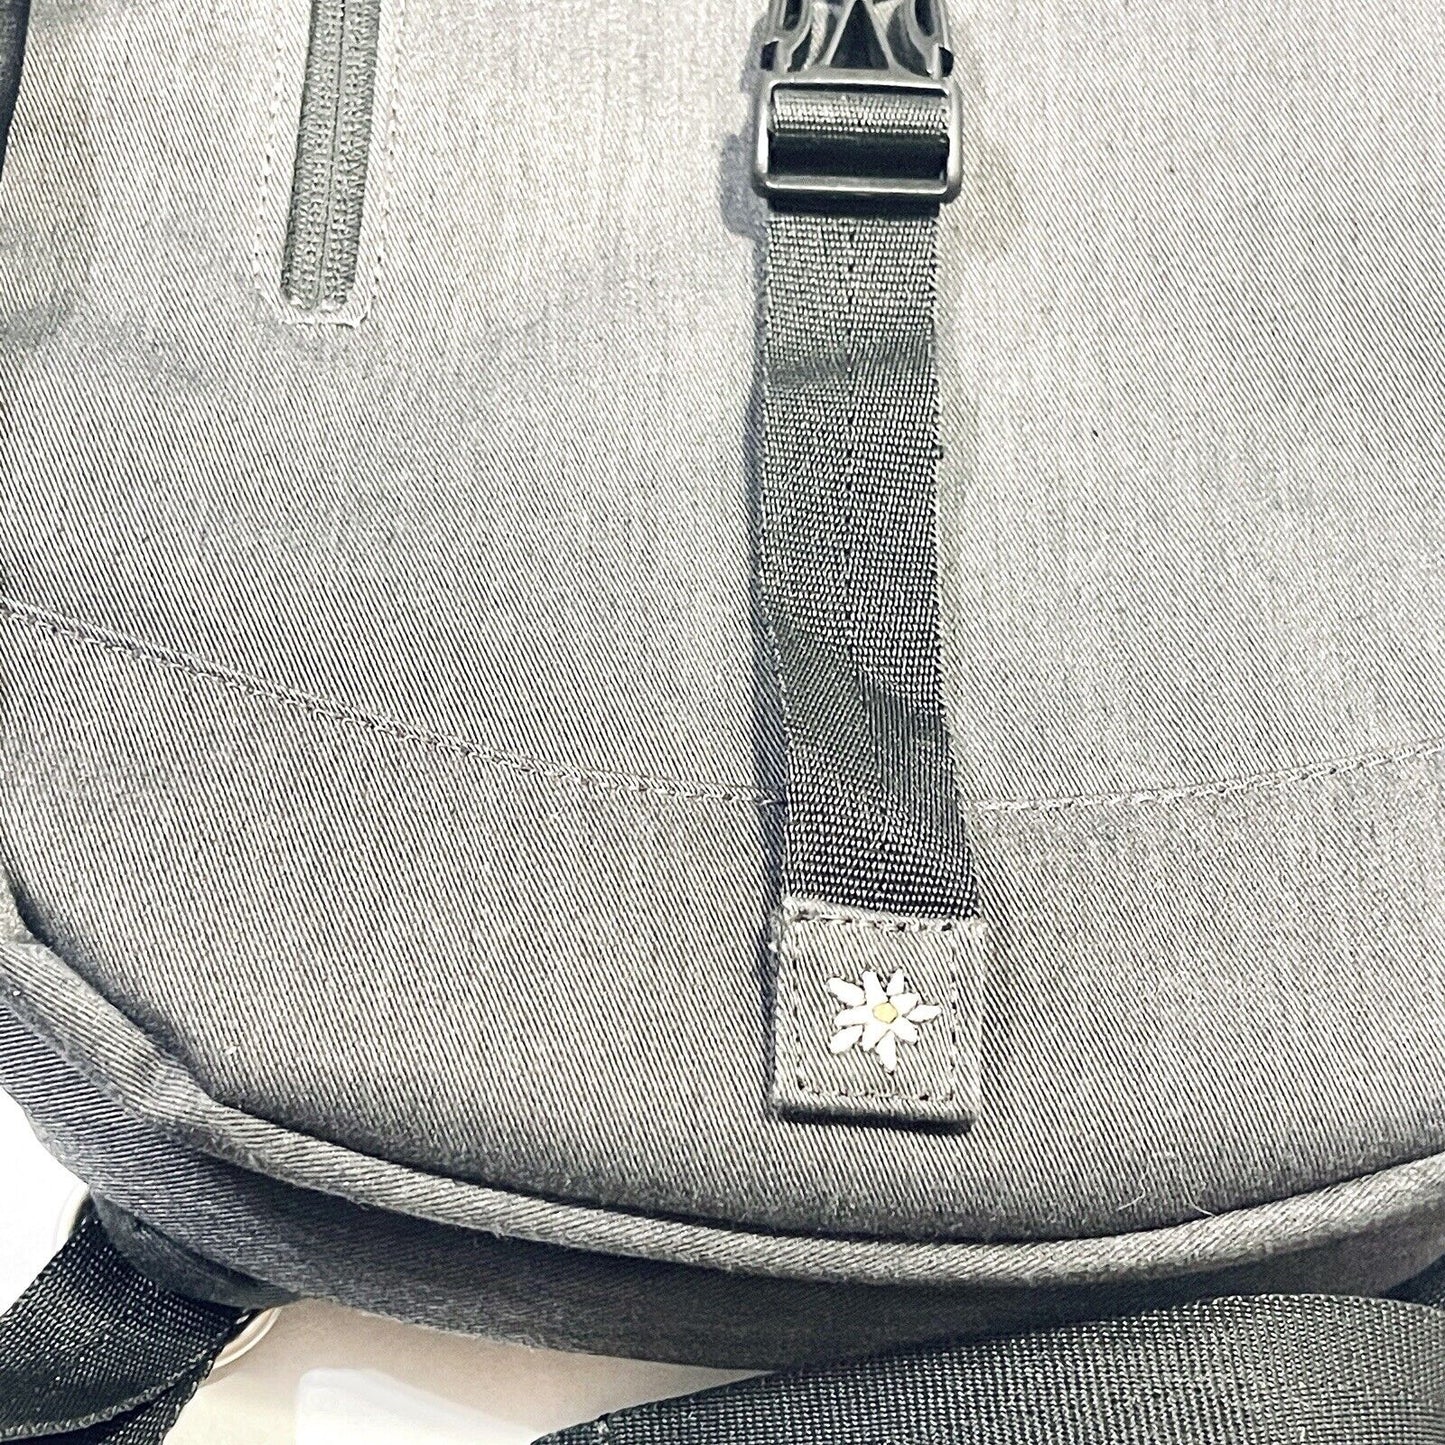 Sherpani Oli Backpack Medium Drawstring Gray Yellow NEW